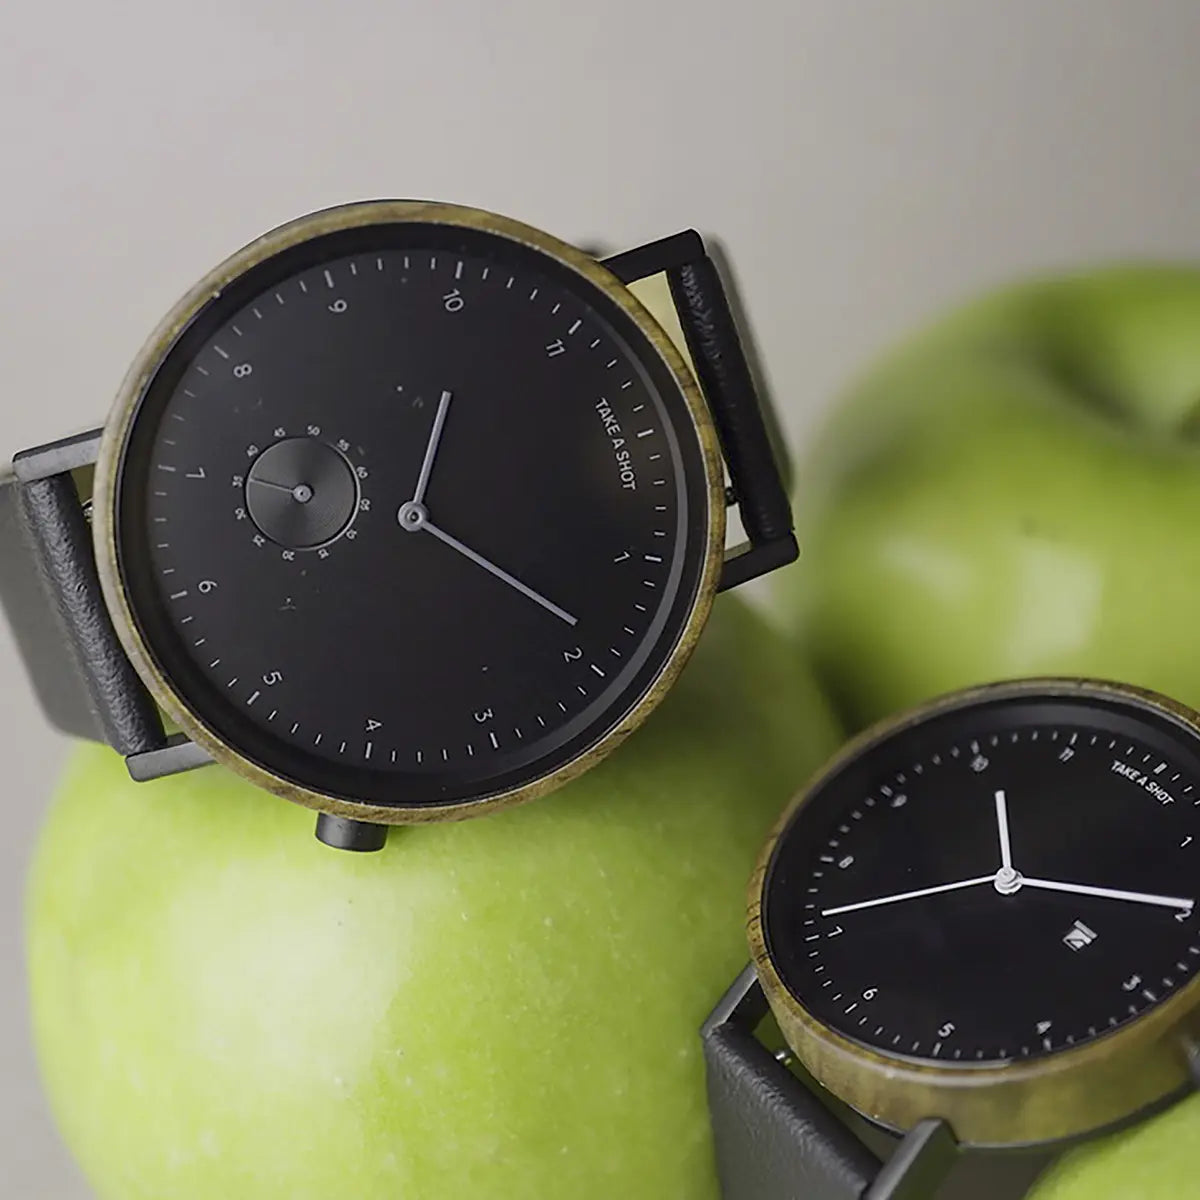 Zwei nachhaltige Armbanduhren von Take A Shot zusammen mit einem grünen Apfel